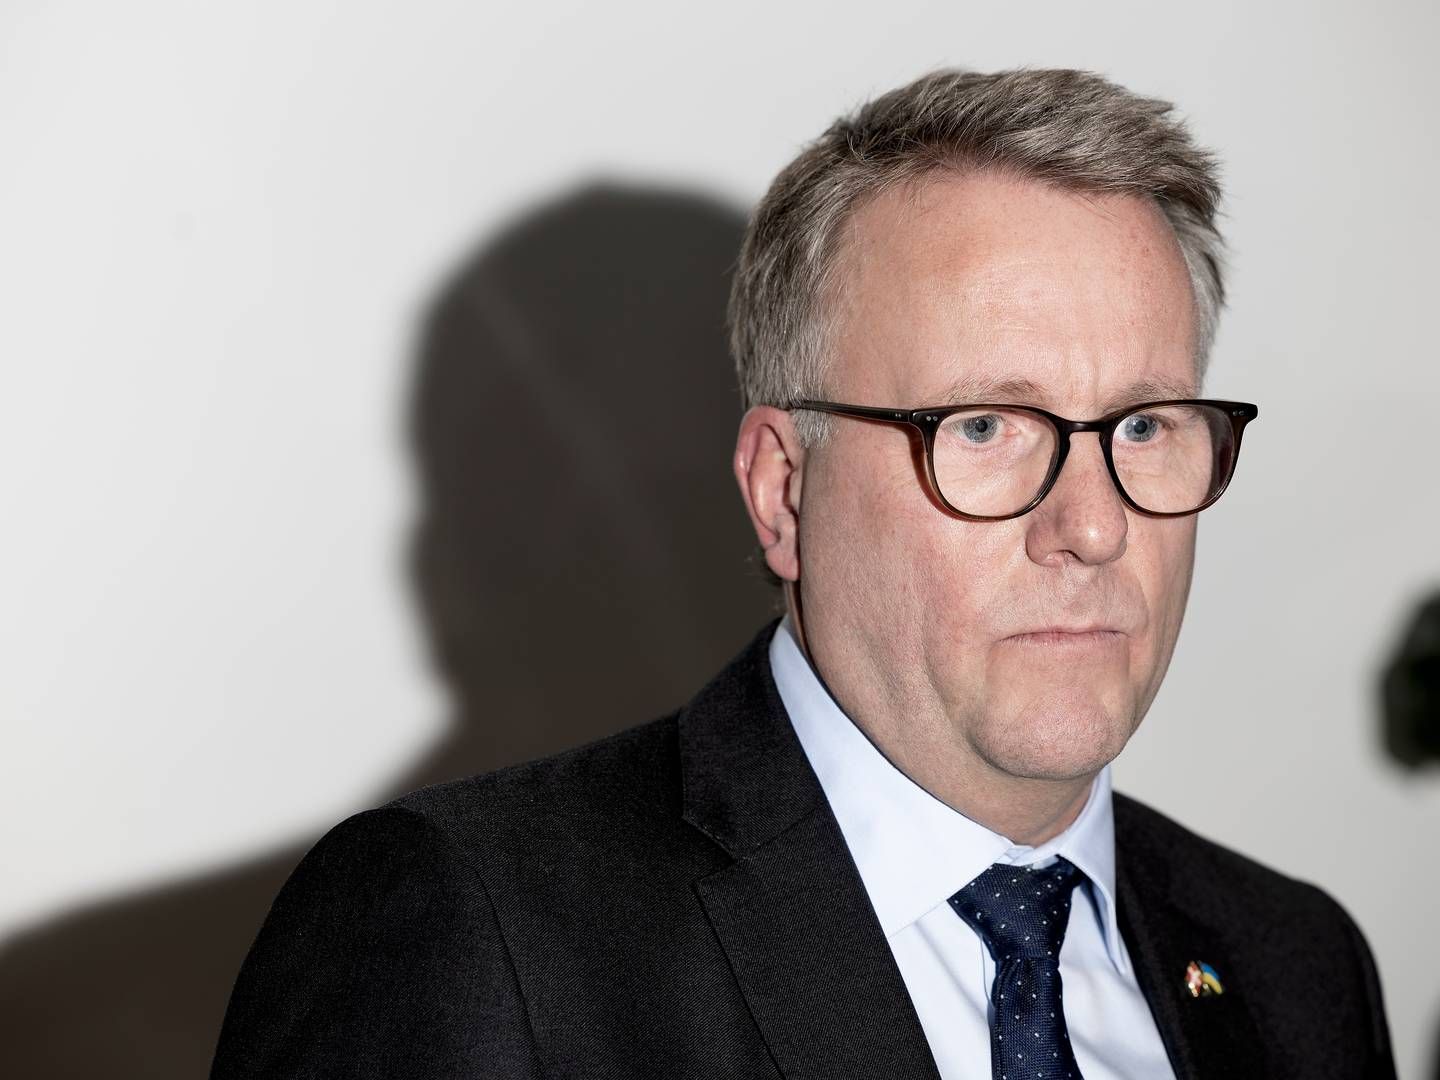 Erhvervsminister Morten Bødskov (S) forventer, at bankerne lever op til deres ansvar i kampen mod kriminalitet. | Photo: Thomas Borberg